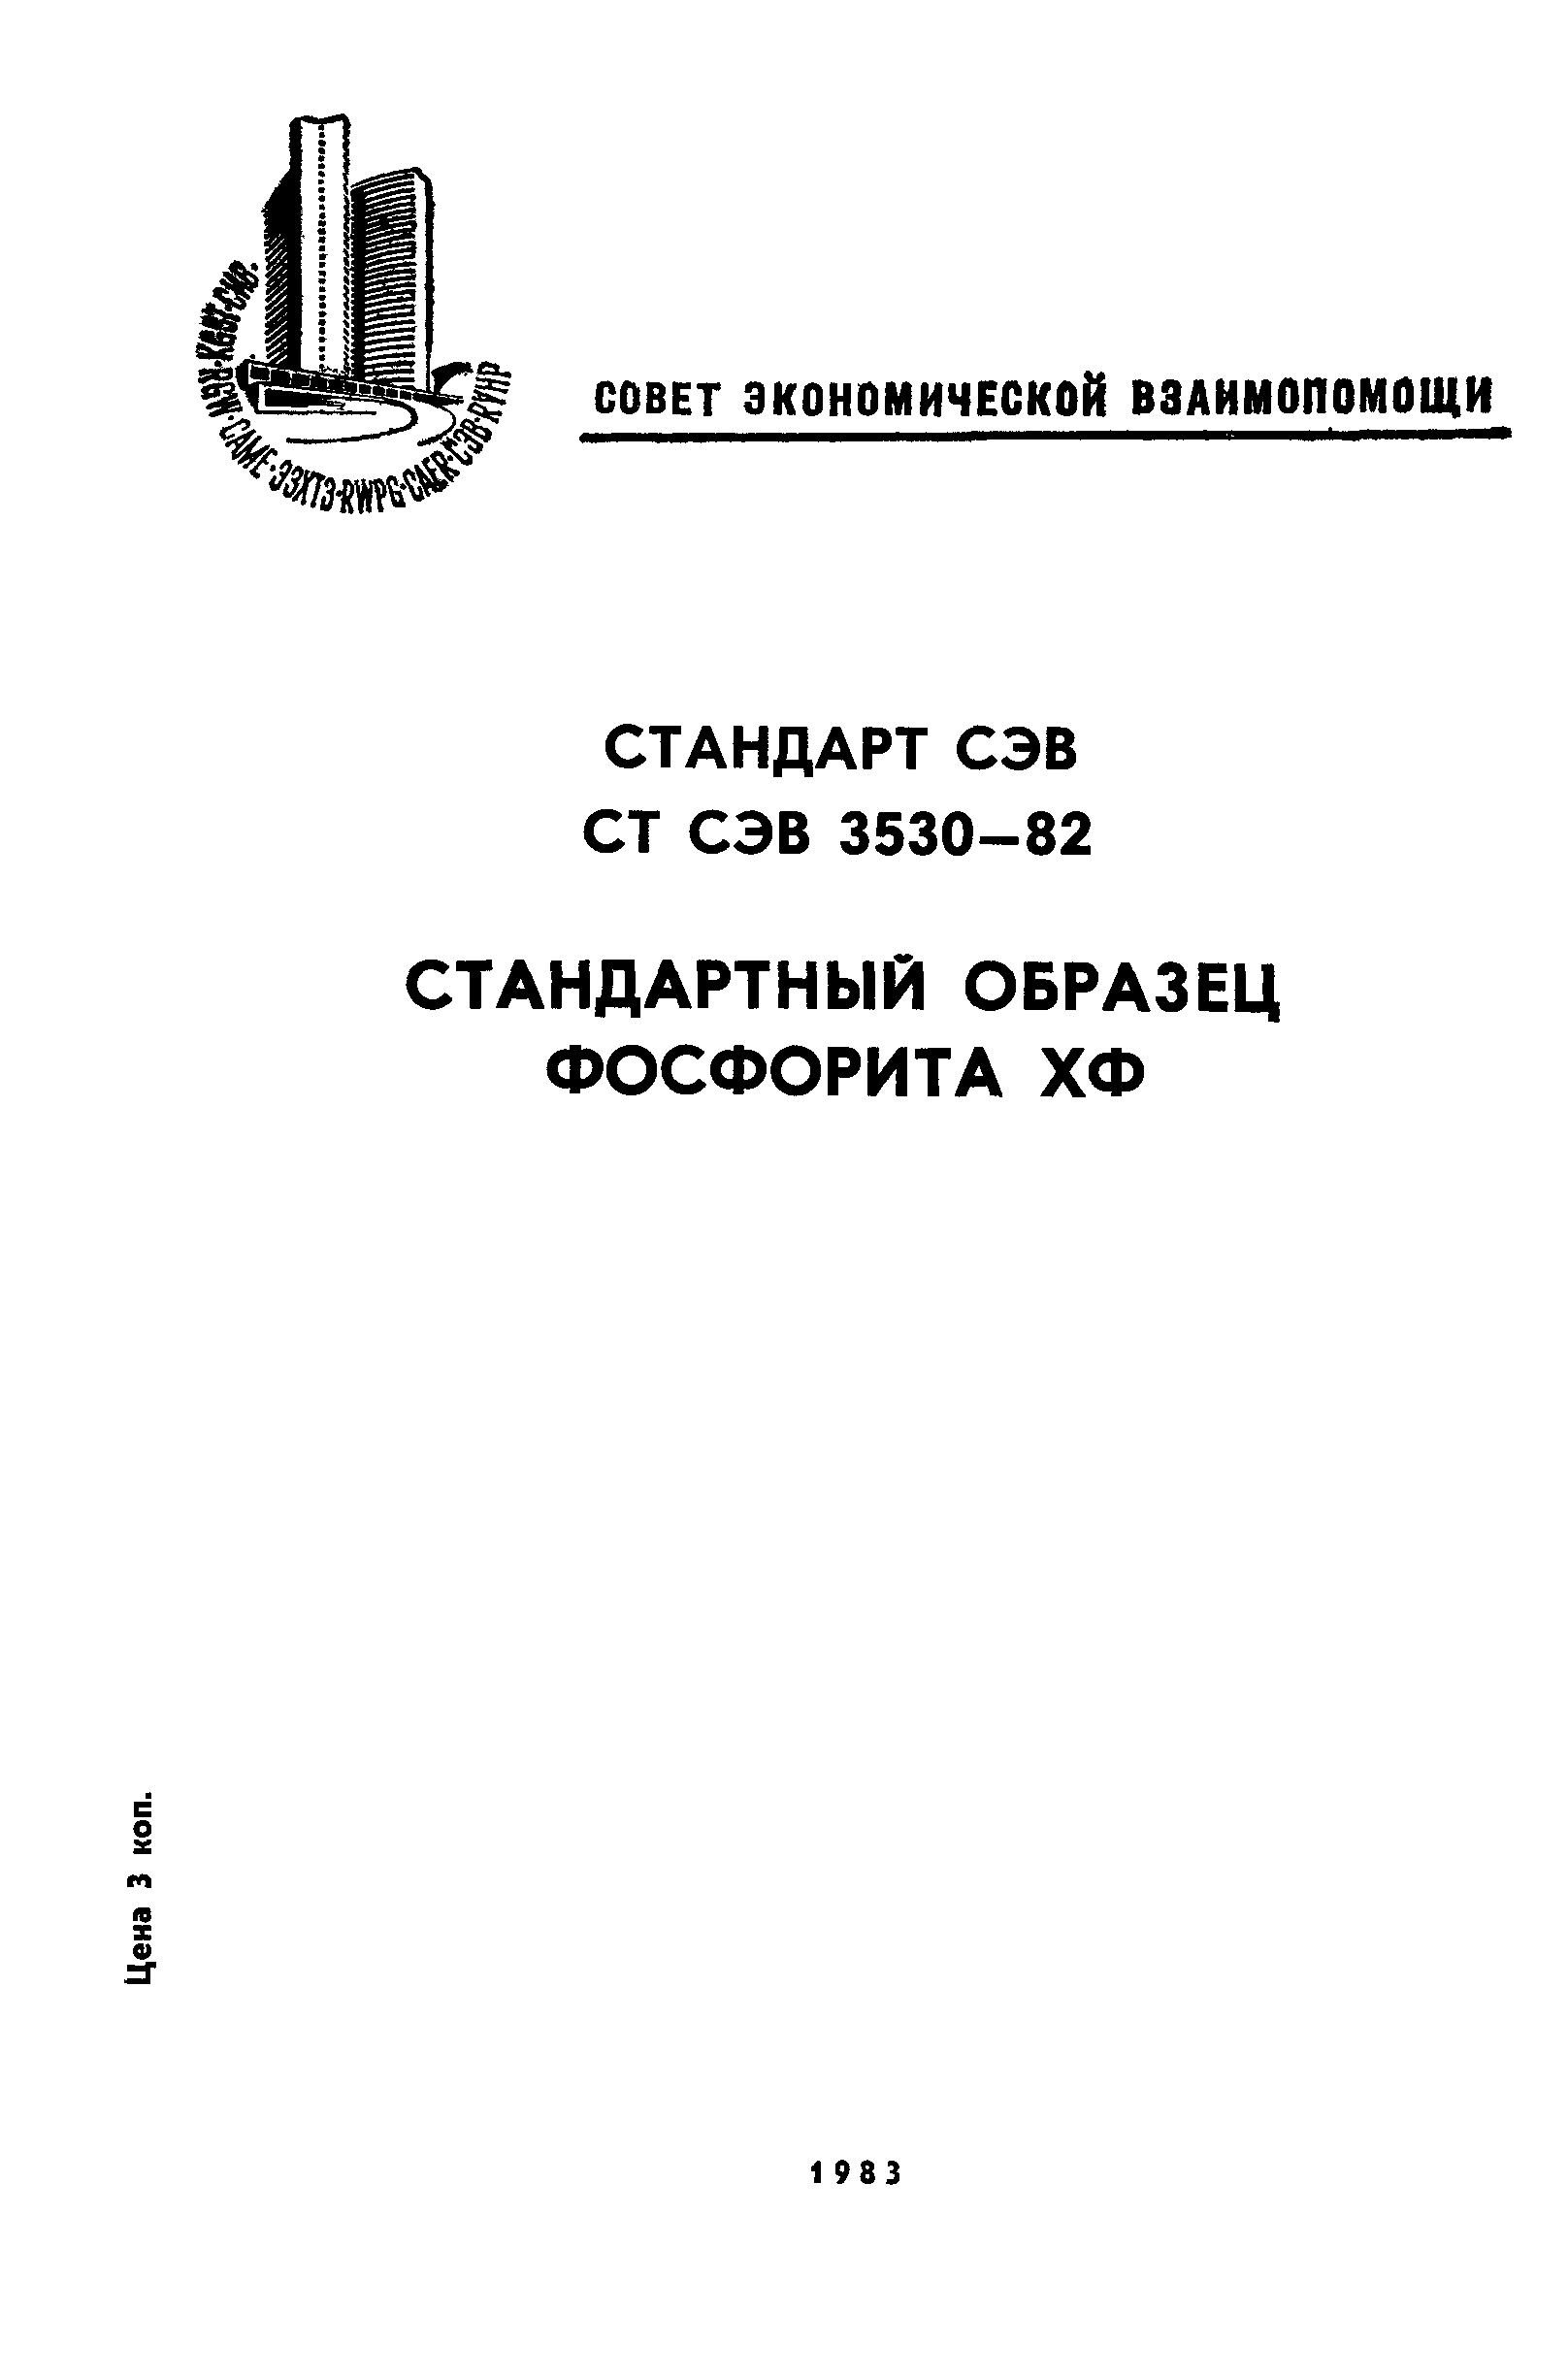 СТ СЭВ 3530-82